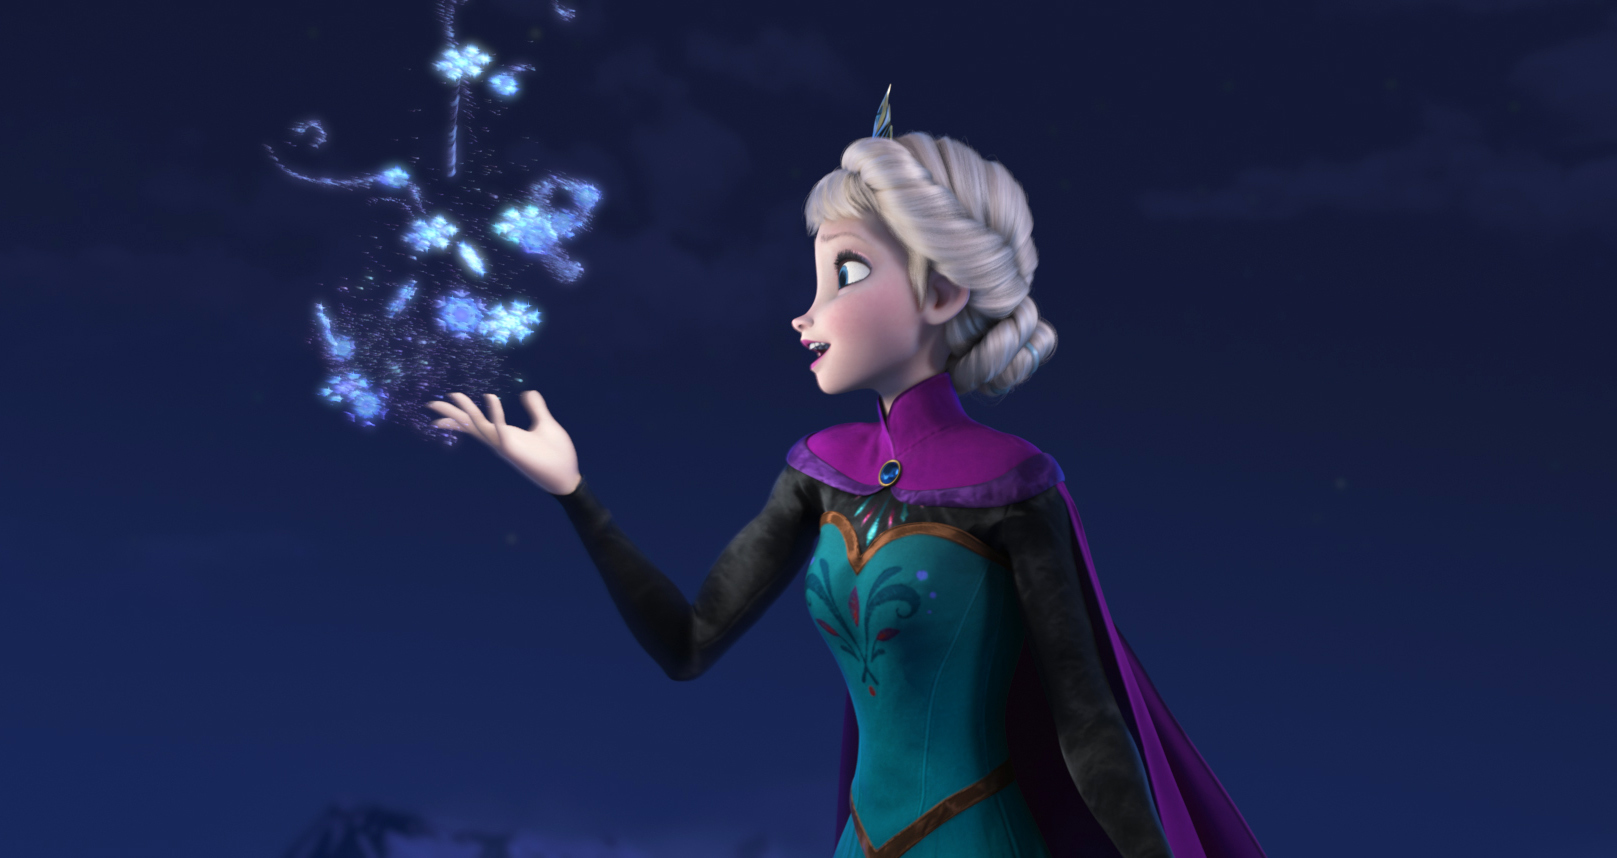 Elsa the Snow Queen from Disney's "Frozen."